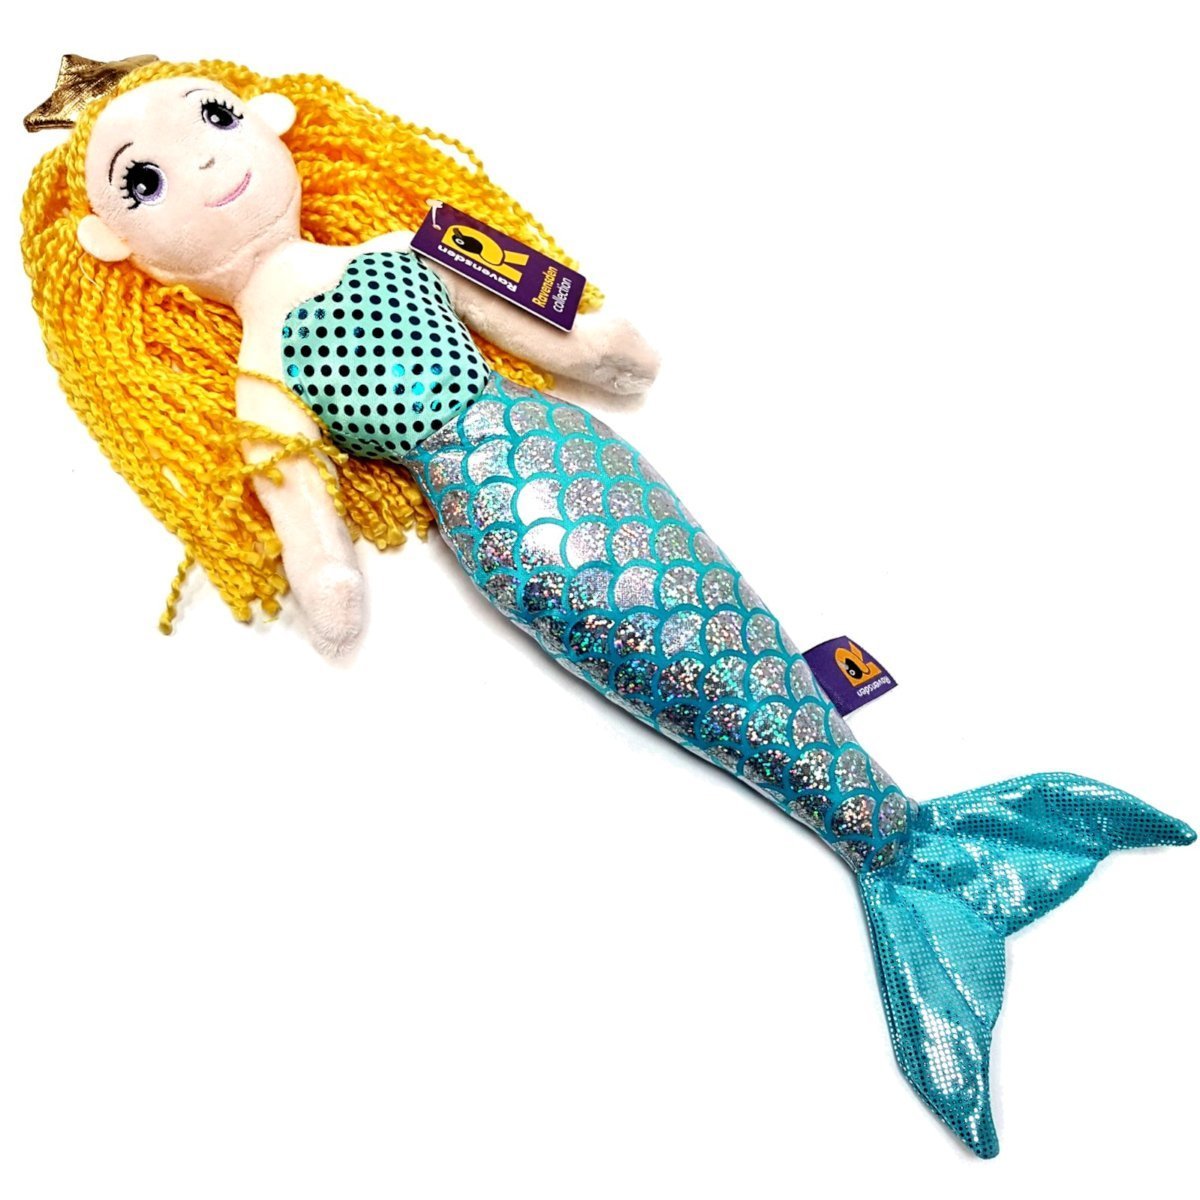 Ravensden Kleine Meerjungfrau-Prinzessin-Puppe, weiches Spielzeug, goldfarbenes Haar, frühjährige Meerjungfrau, 41 cm